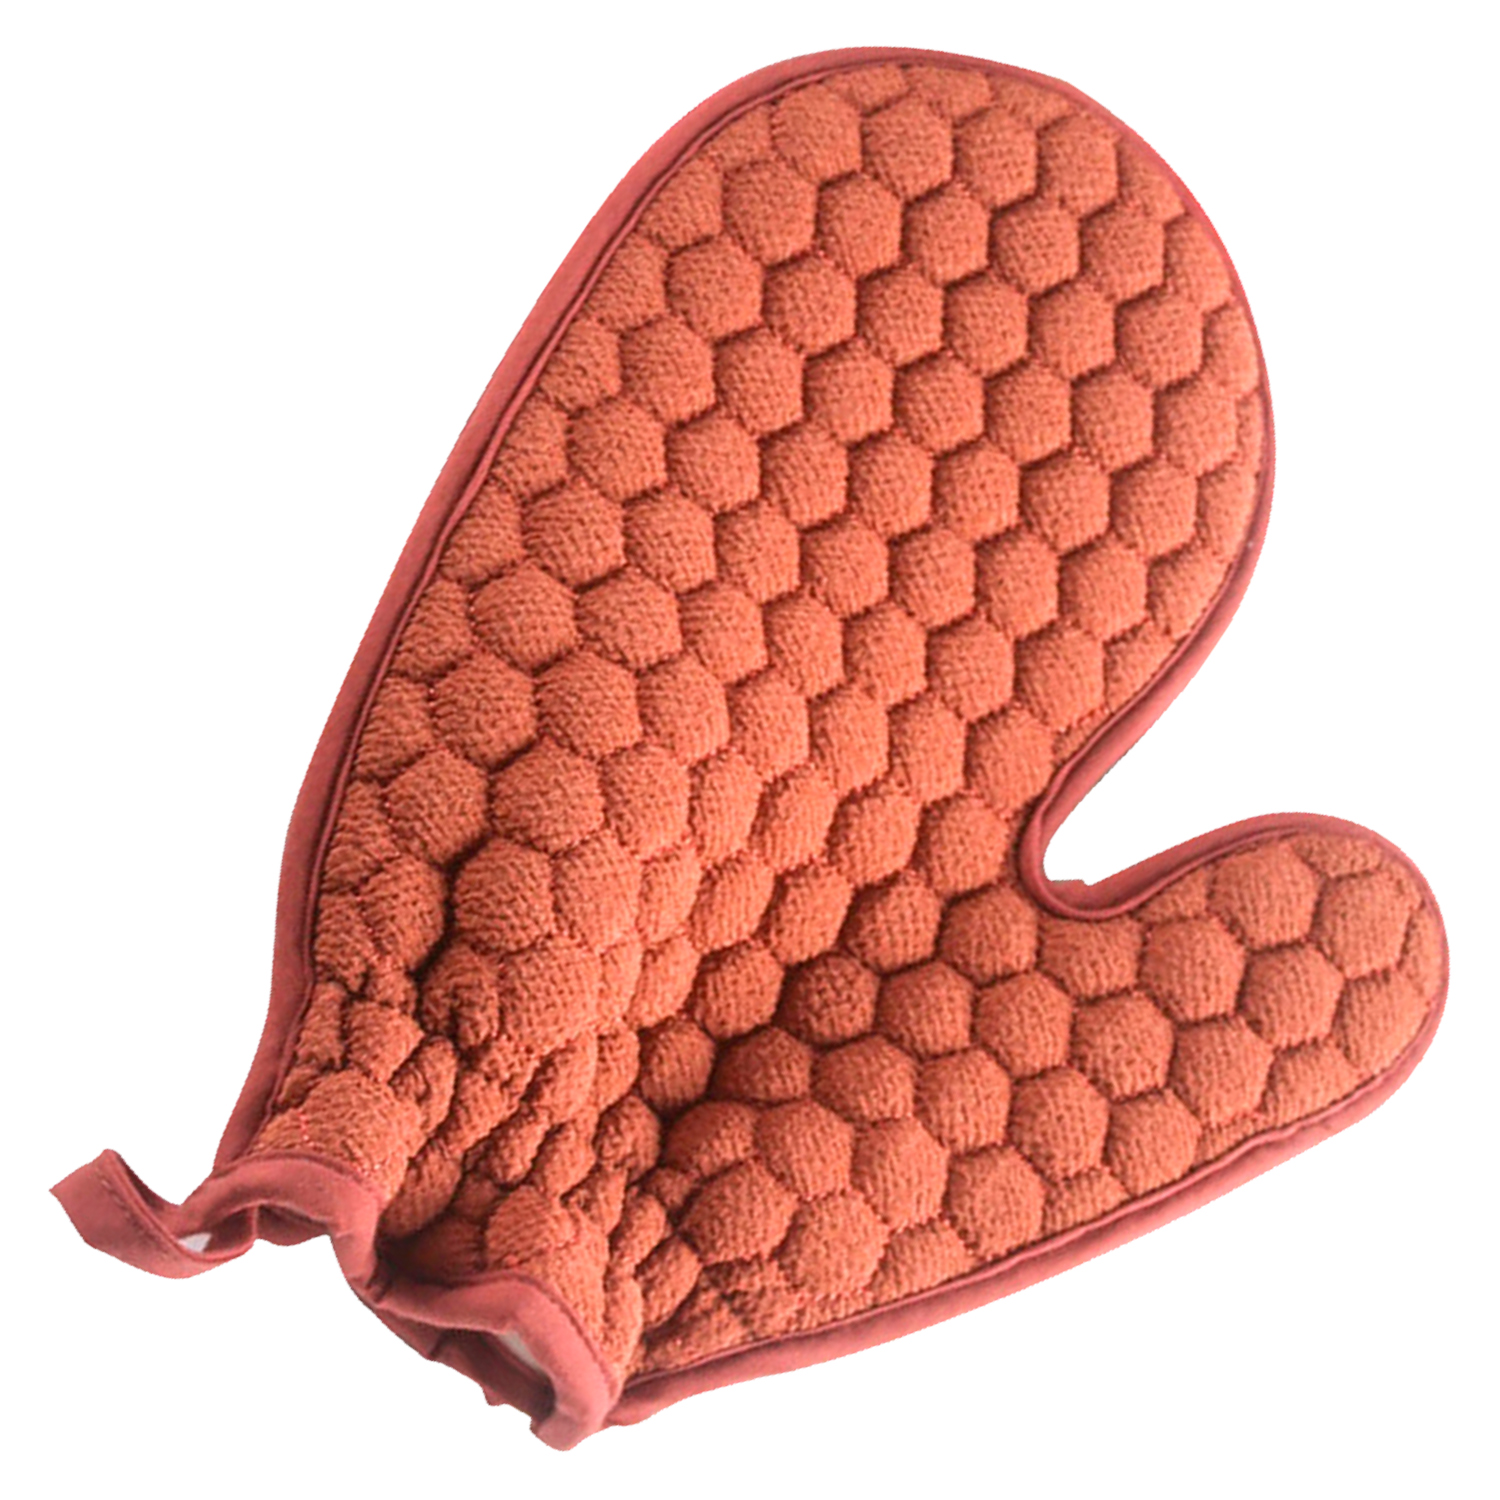 Мочалка-рукавица, VenusShape, цвет красно-оранжевый, 23х14 см мочалка beauty format натуральная рукавица джут